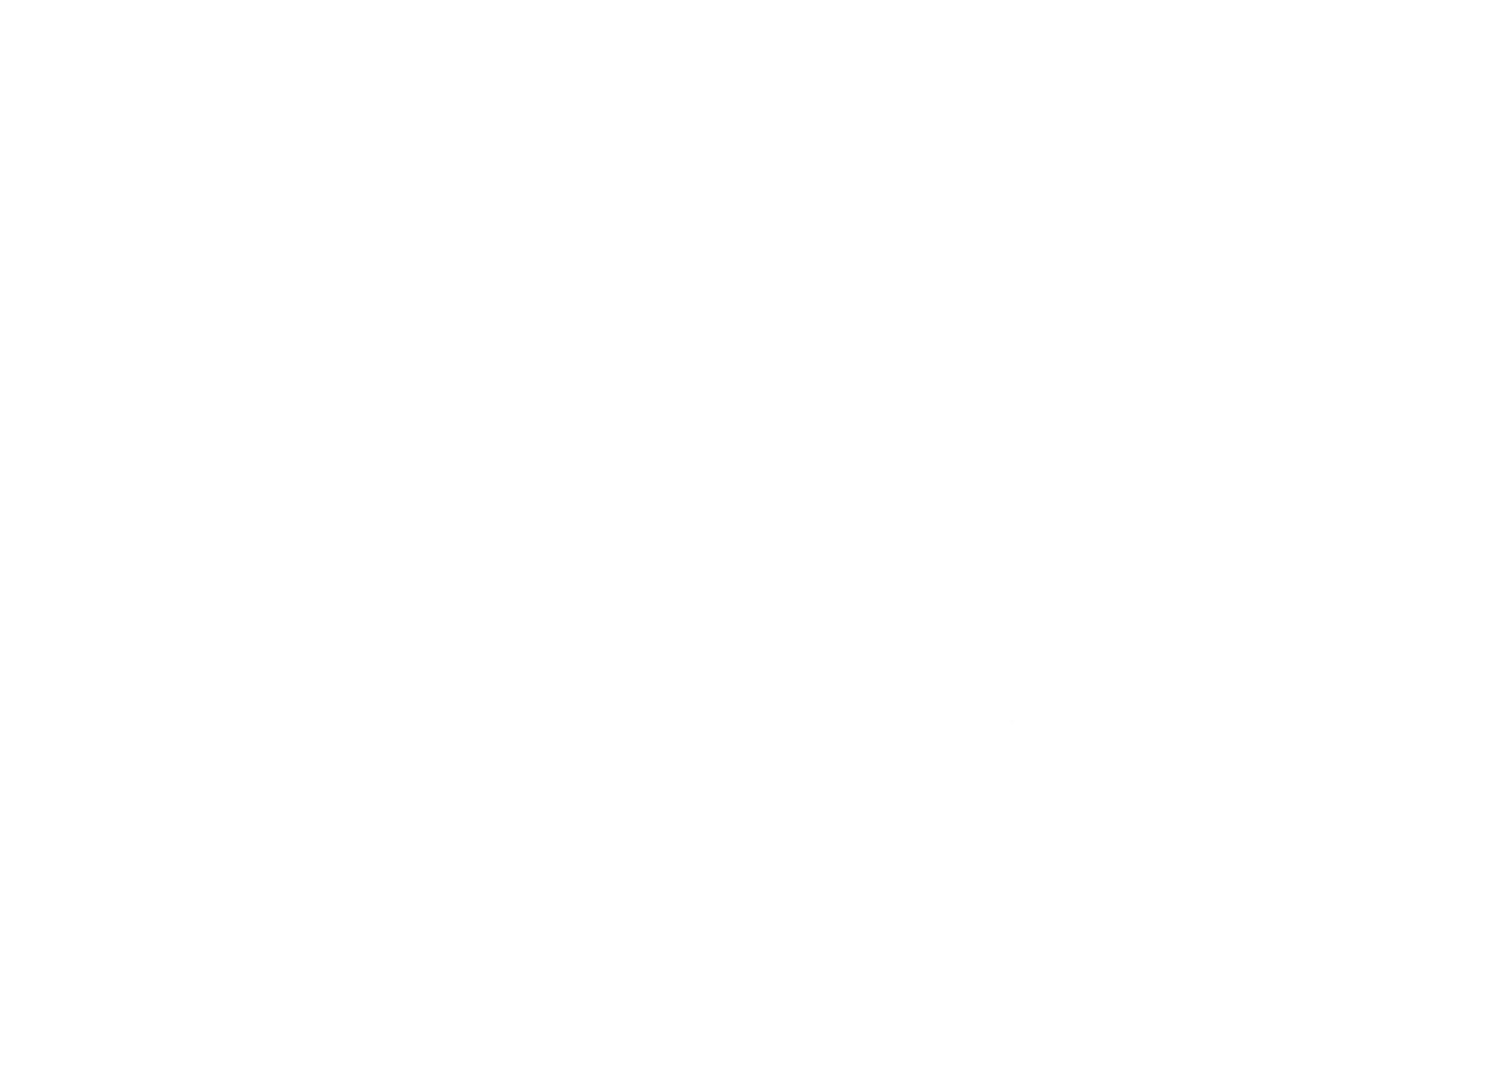 STARTedUP Foundation